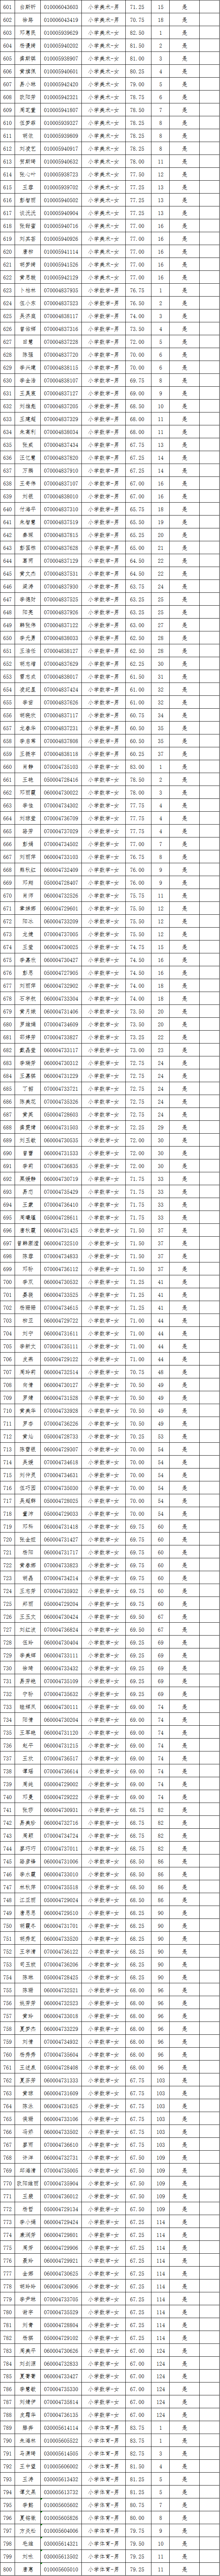 2021年长沙县第—批教师招聘入围试教人员名单公示(图13)